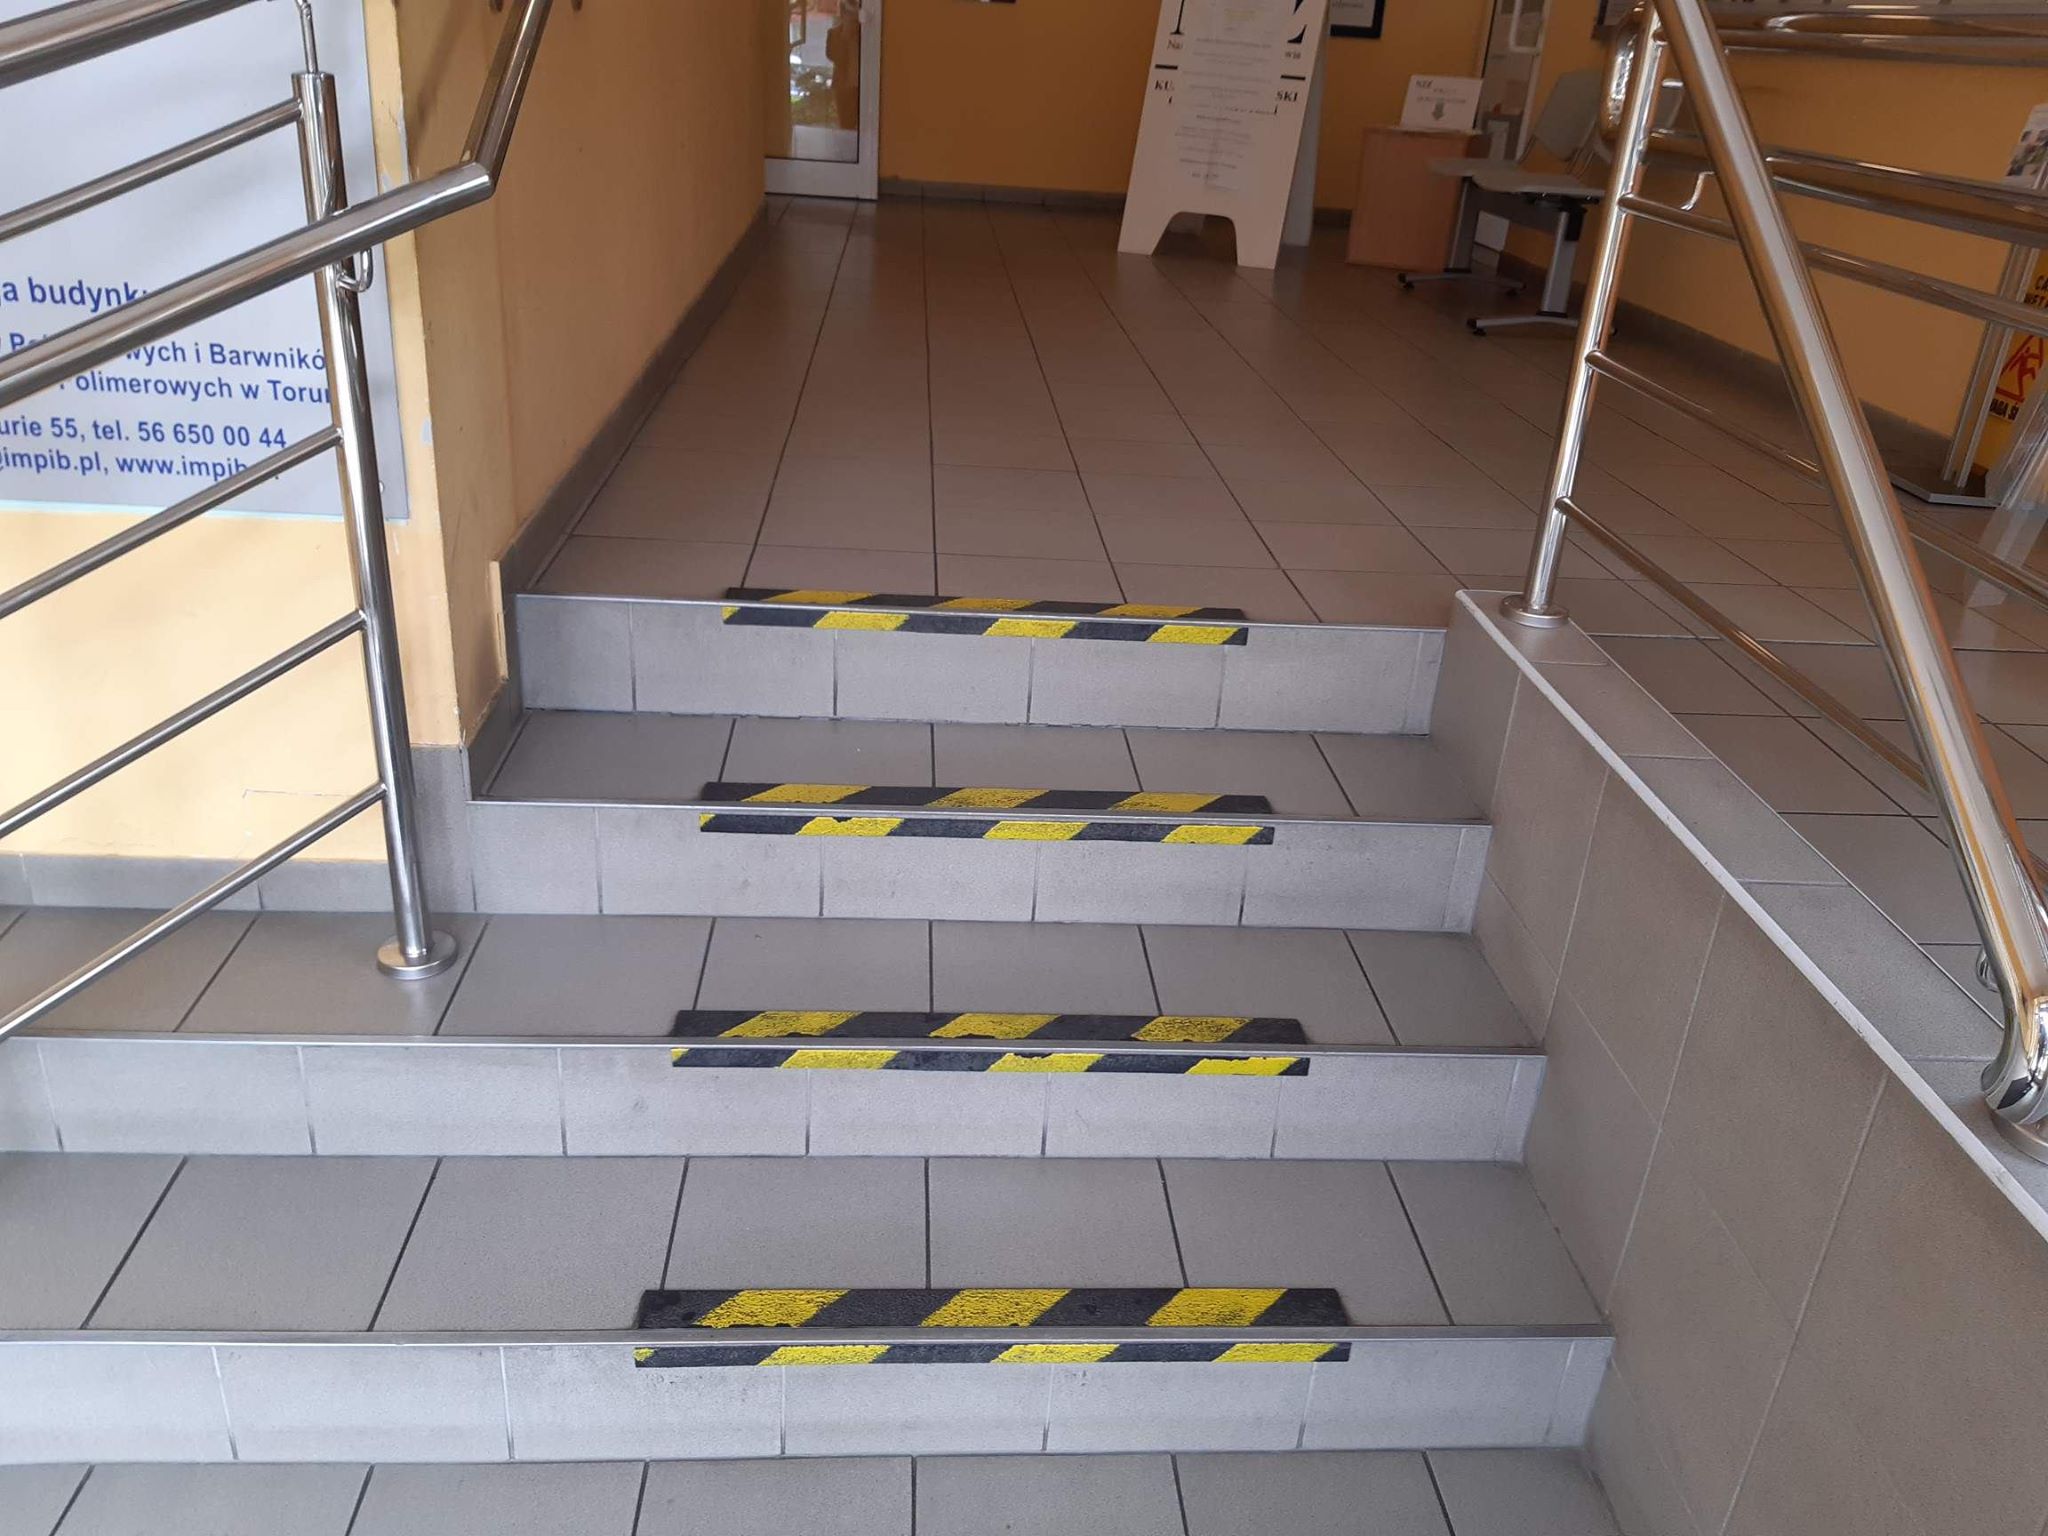 Schody obłożone jasnoszarymi płytkami, na krawędziach schodów czarno-żółte taśmy mające skontrastować stopnie schodów. Po lewej i po prawej stronie widzimy poręcze wykonane ze stali nierdzewnej. Po lewej stronie za poręczą widać tablicę informacyjną. Schody prowadzą na poziom, gdzie widzimy białą tablicę informacyjną i drzwi po lewej stronie.